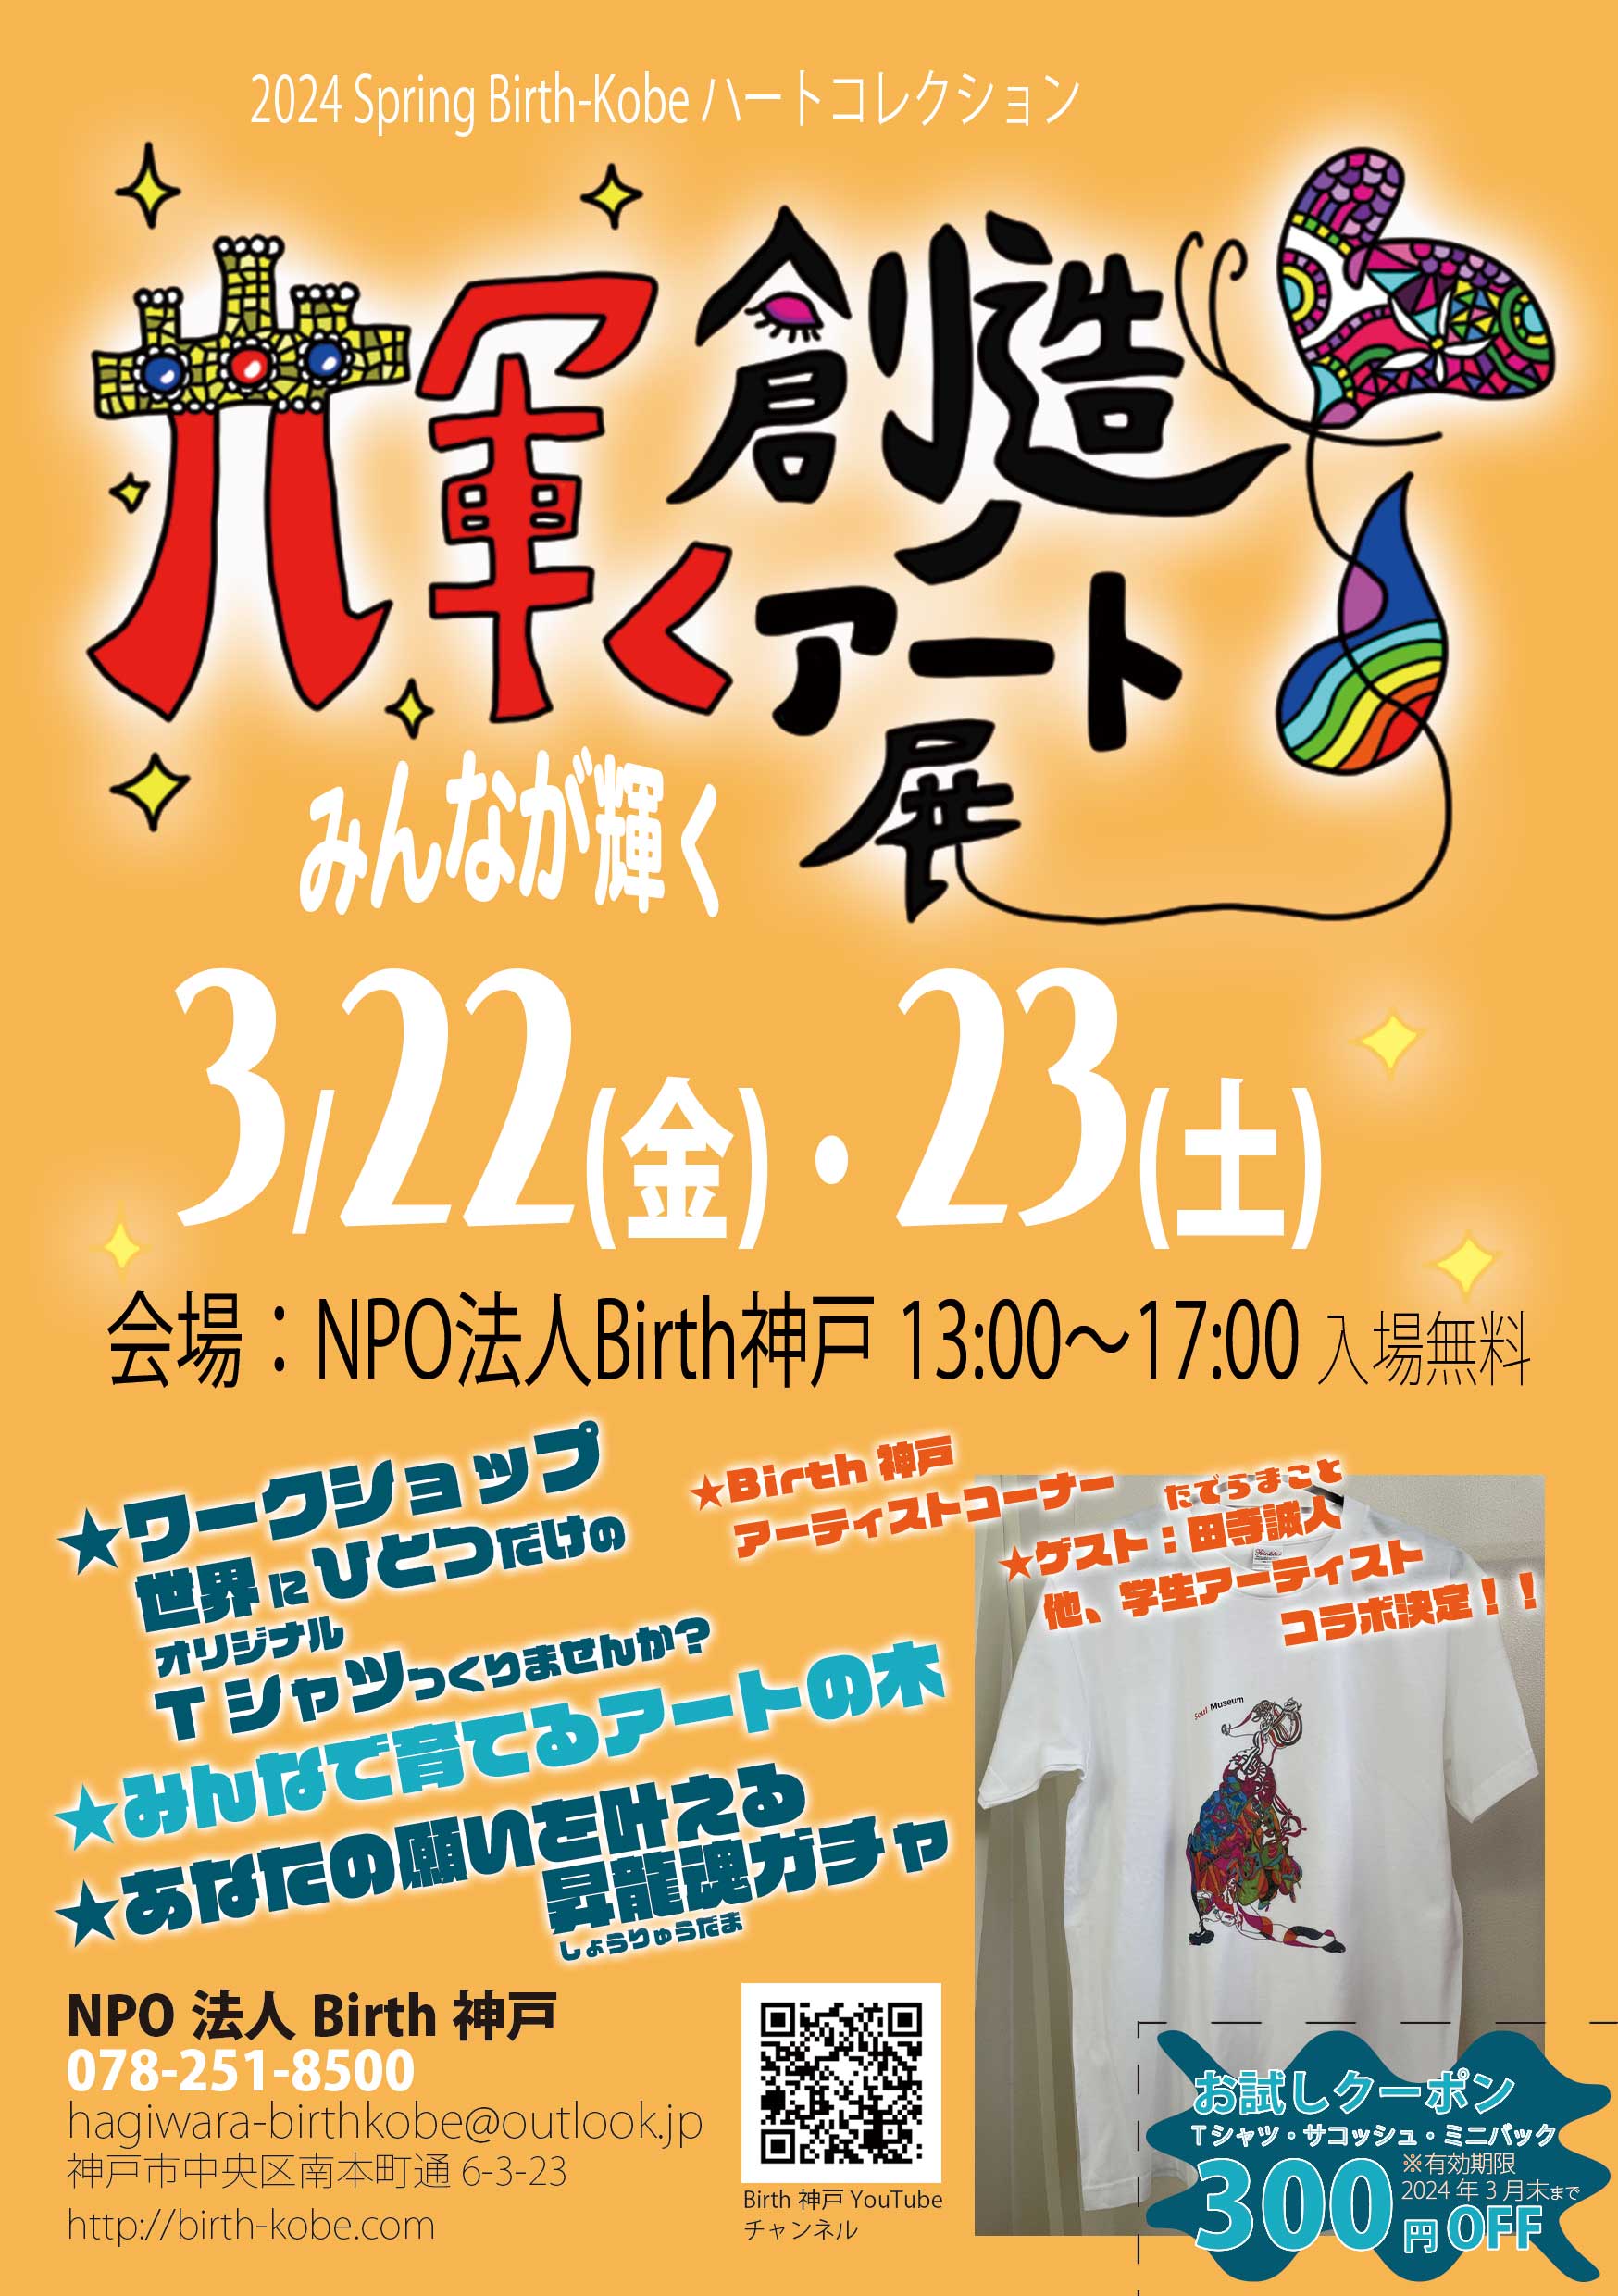 「輝く創造のアート展」～2024 Spring Birth-Kobe ハートコレクション～